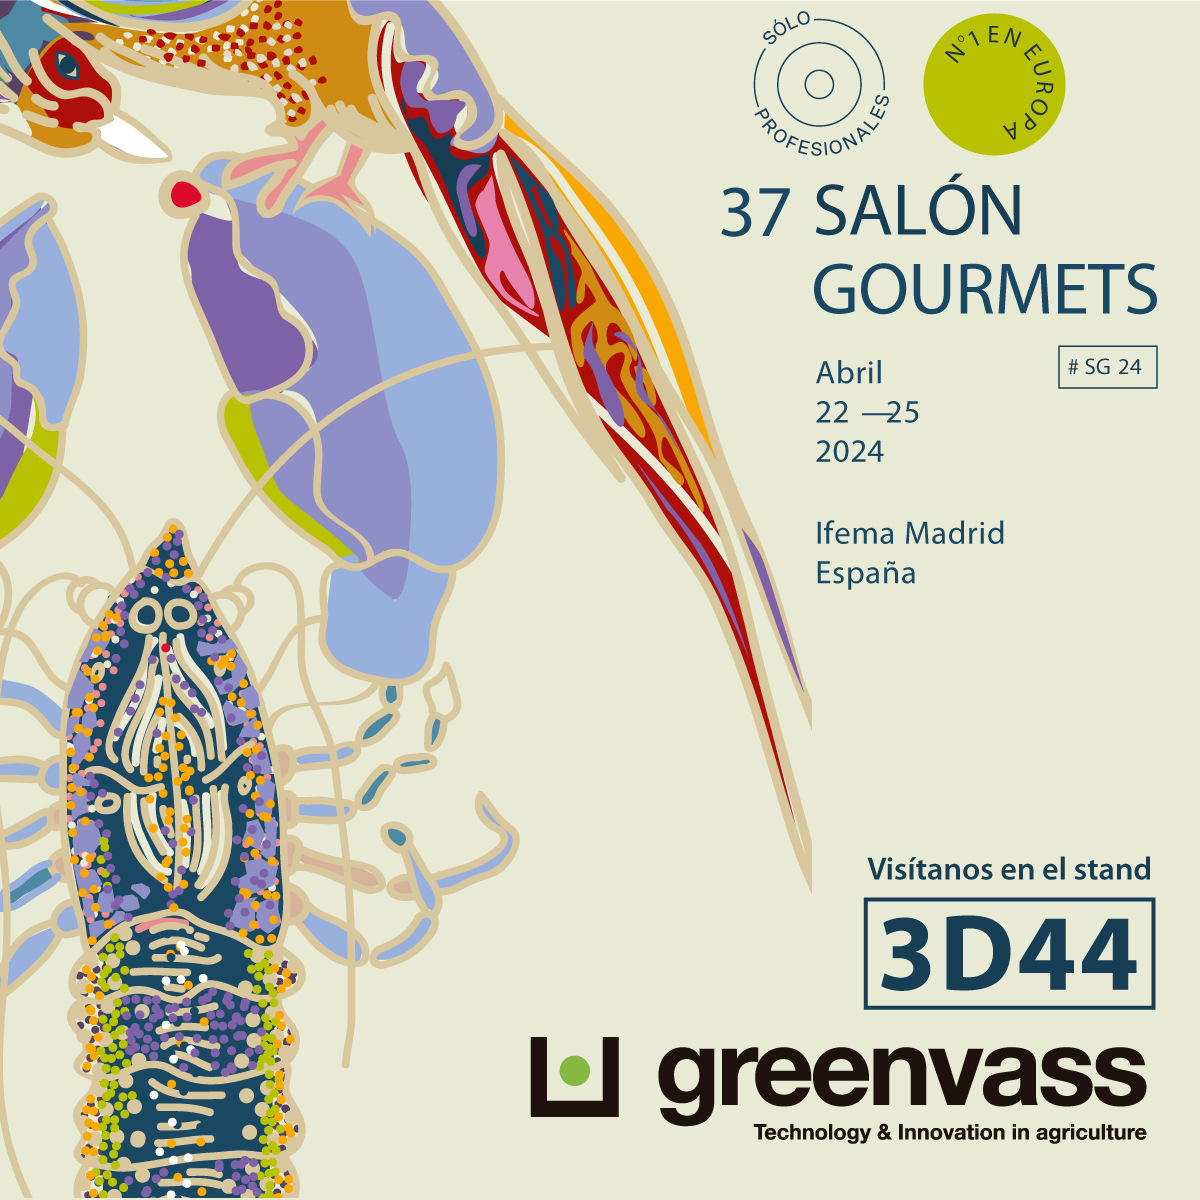 ¡Nos vemos en #SalonGourmets 2024!  37 edición de la Feria Internacional de Alimentación Yy Bebidas de Calidad. Los próximos 22, 23, 24 y 25 de abril en IFEMA MADRID. 
Nos encontraréis en el stand 3D44.
#SalonGourmets2024 #IFEMADRID